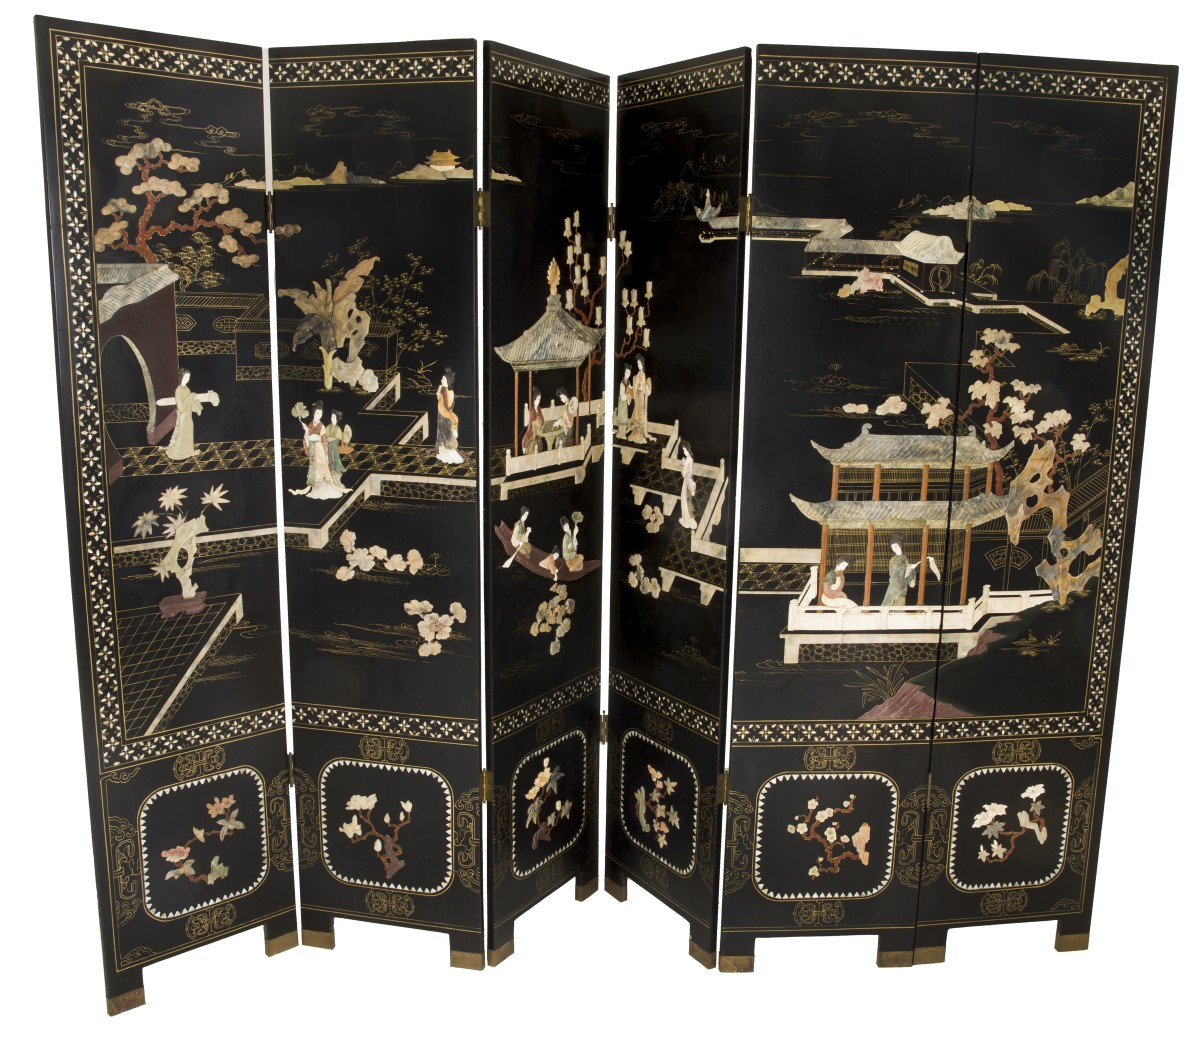 Een zesslags zwartgelakt Chinees kamerscherm ingelegd met speksteen en been van diverse Chinese scenes. De rand ingelegd m et parelmoer.